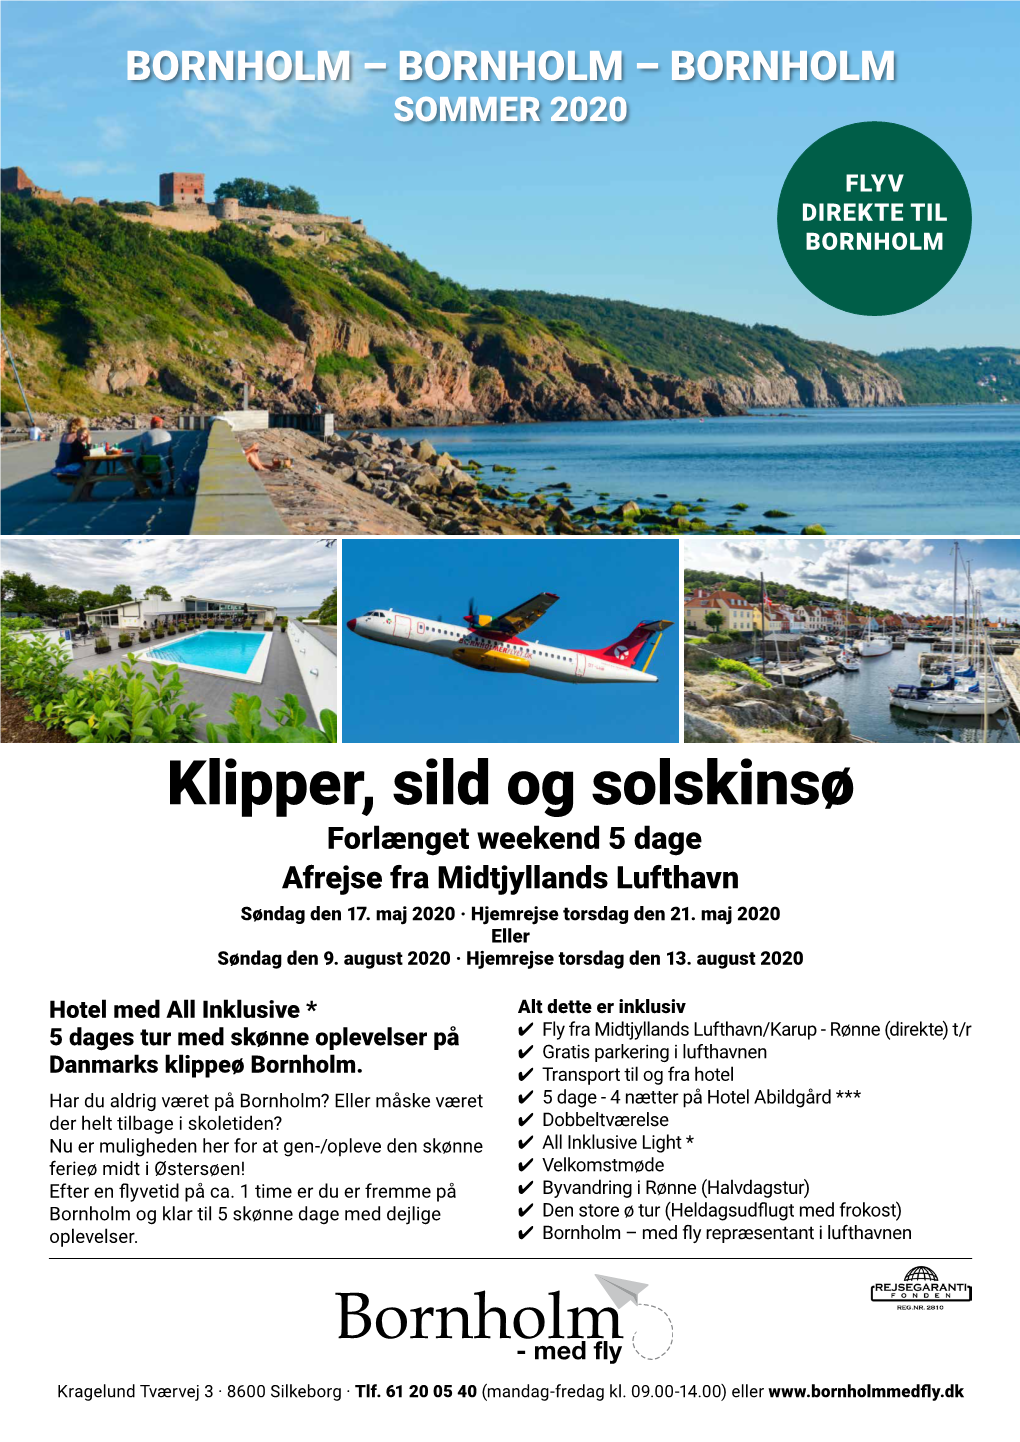 Klipper, Sild Og Solskinsø Forlænget Weekend 5 Dage Afrejse Fra Midtjyllands Lufthavn Søndag Den 17